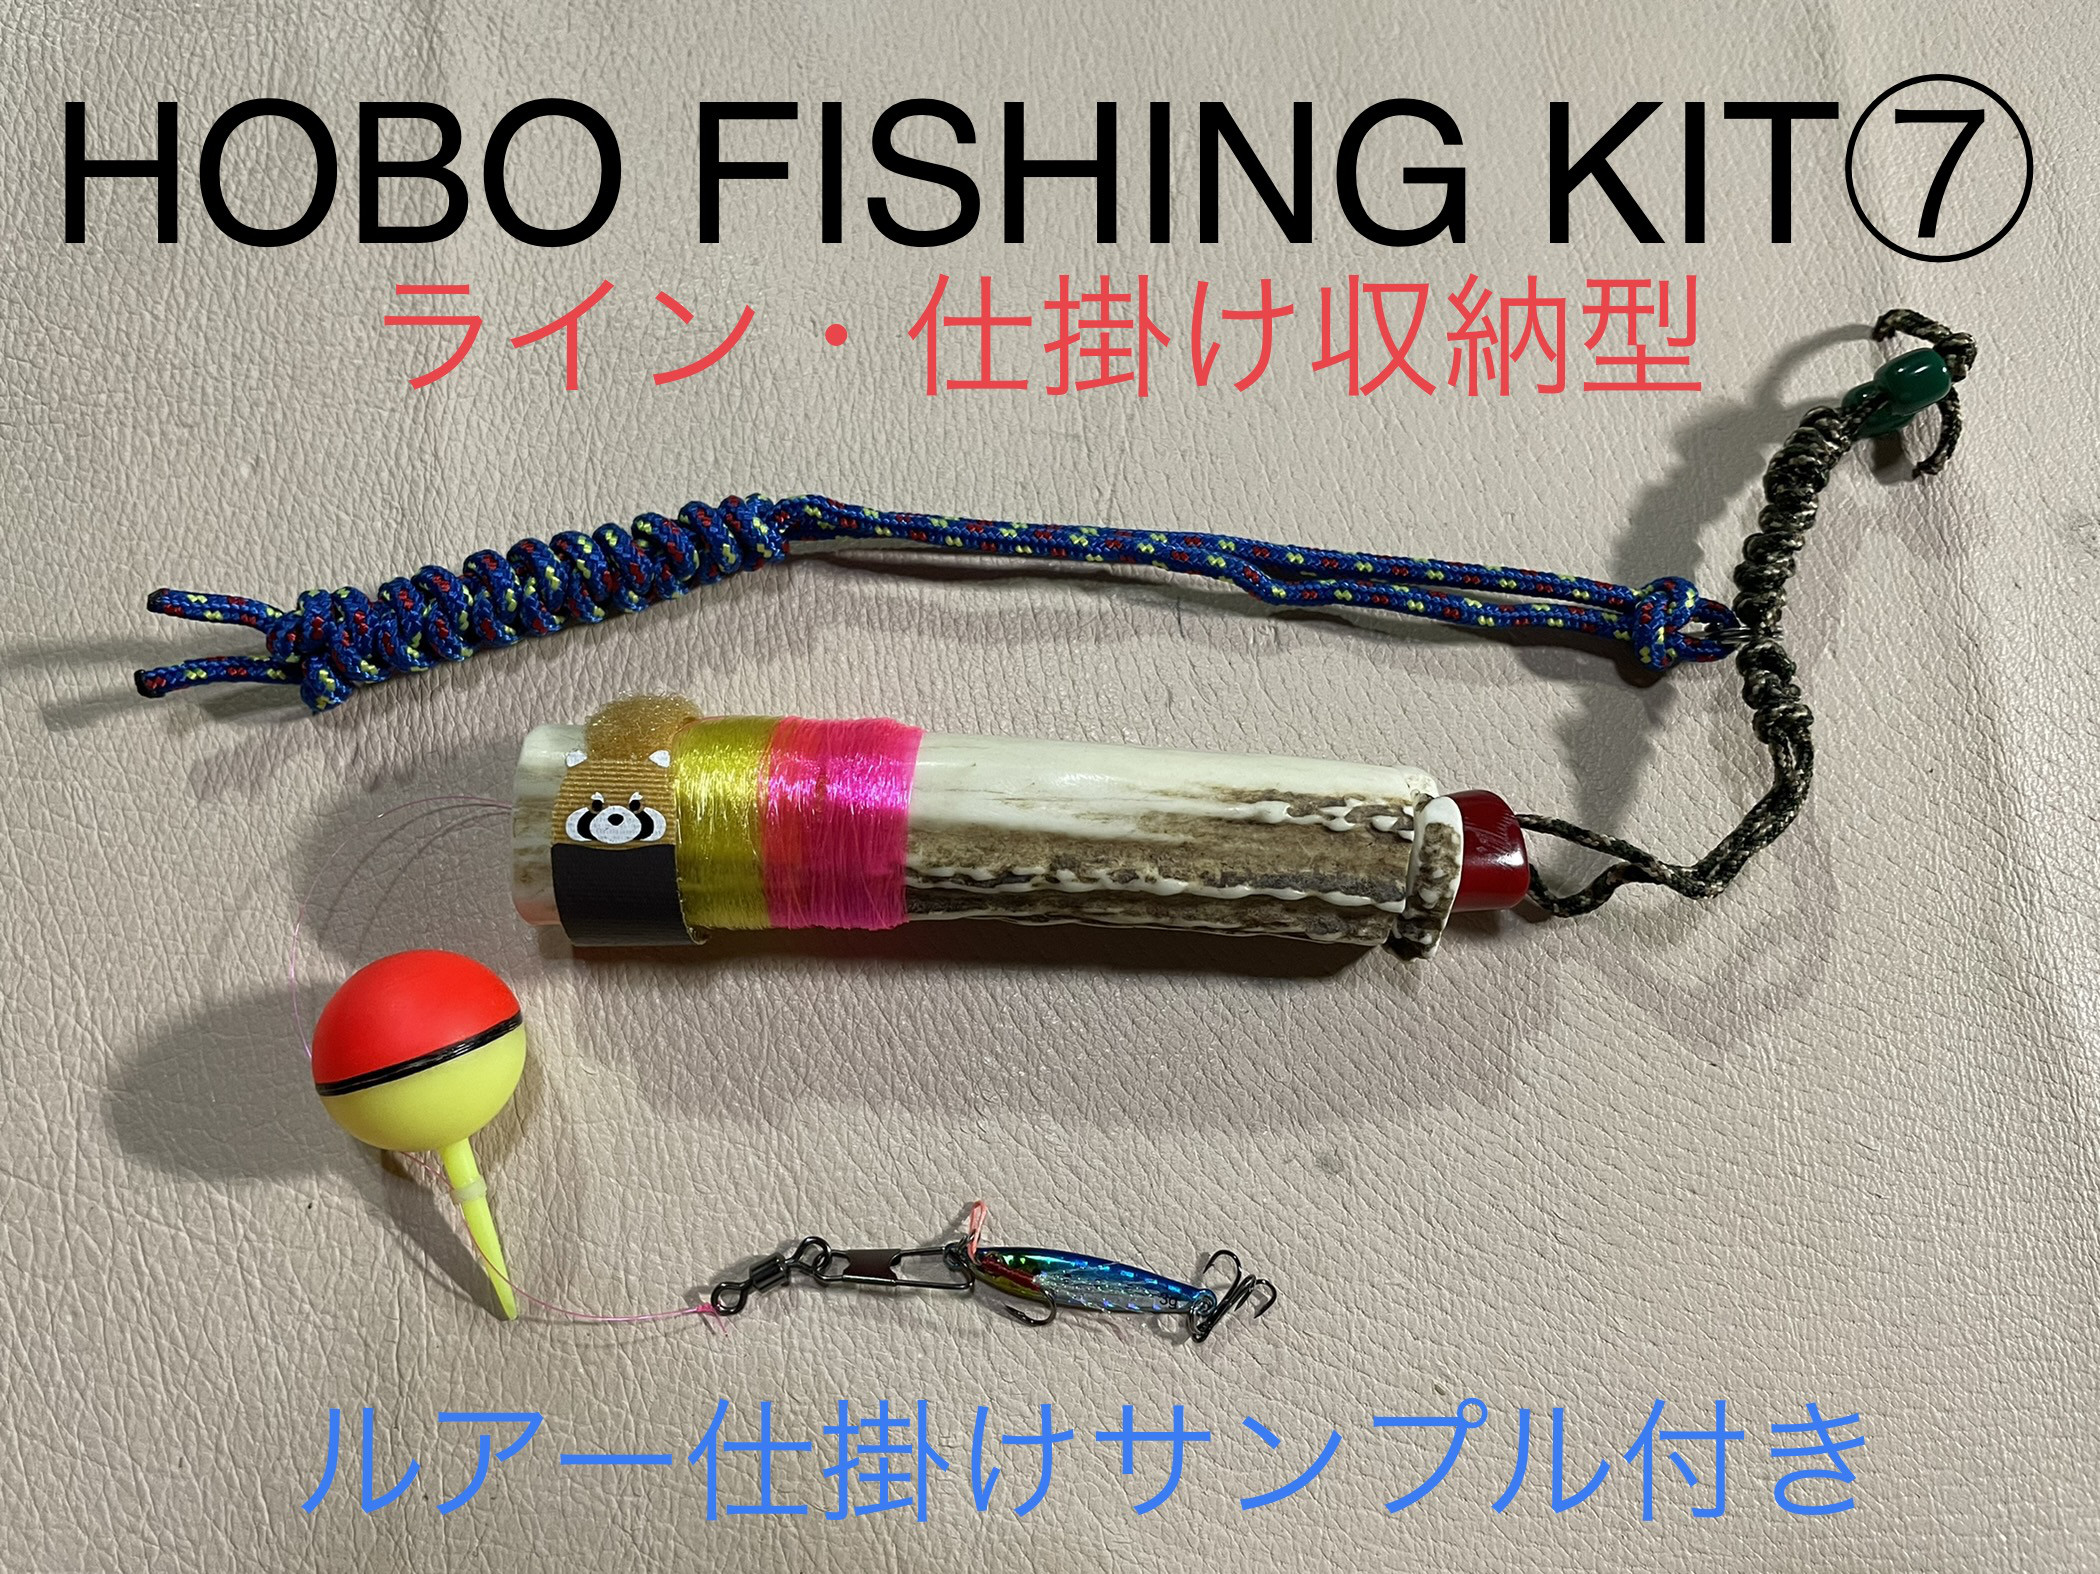 鹿の角 釣り具 HOBO FISHING KIT⑦ブッシュクラフト 釣り その他雑貨